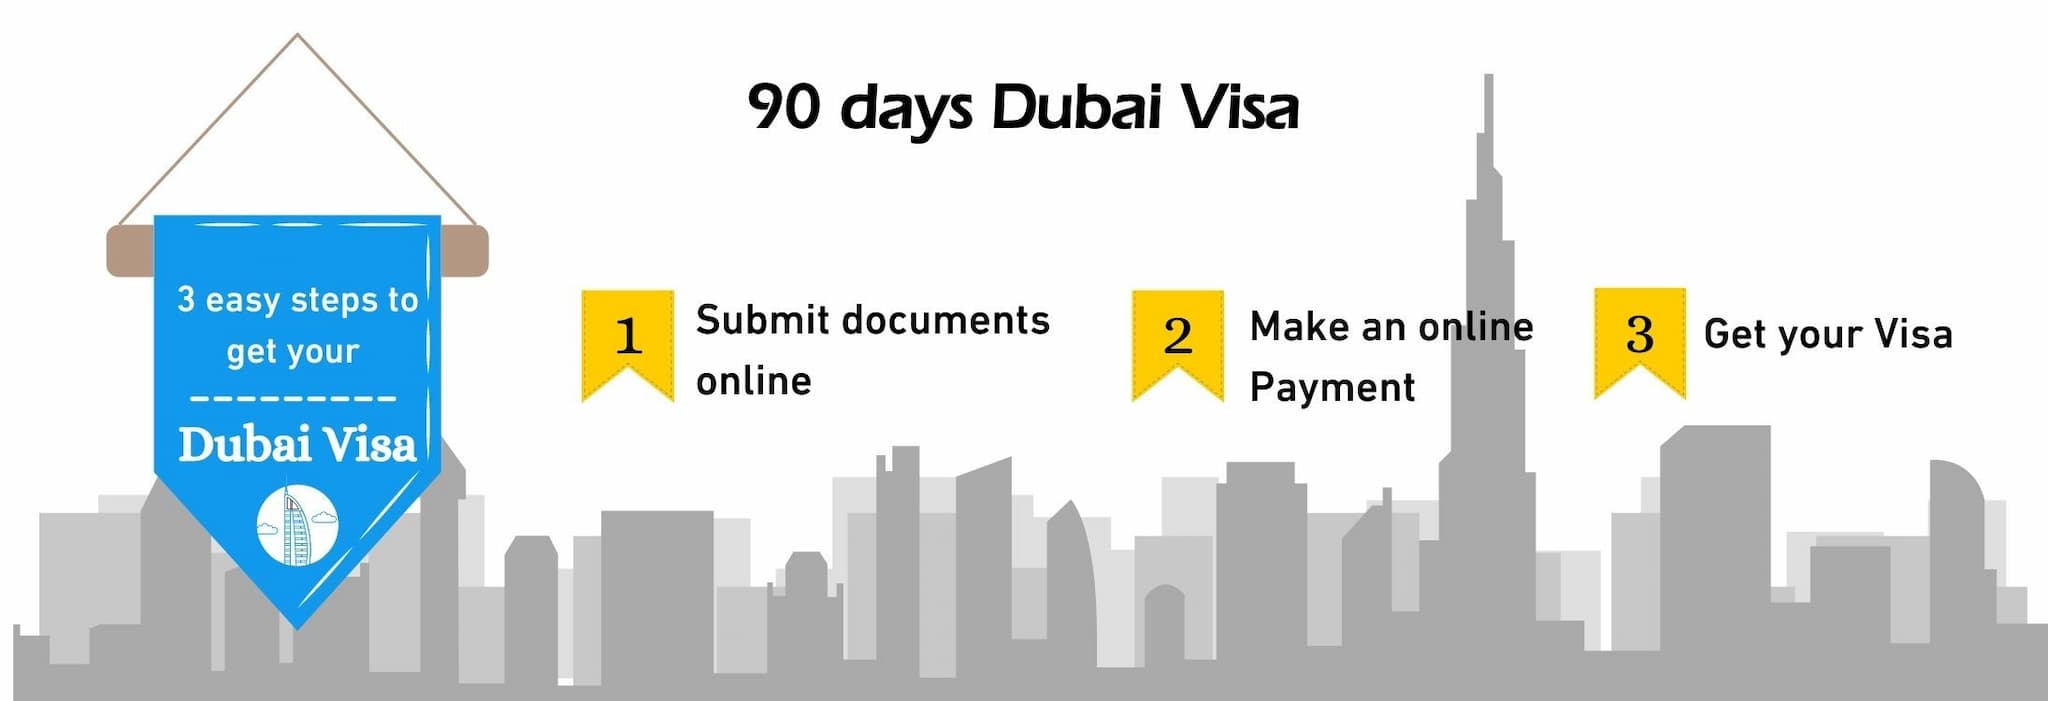 Steps for 90 days Dubai visa